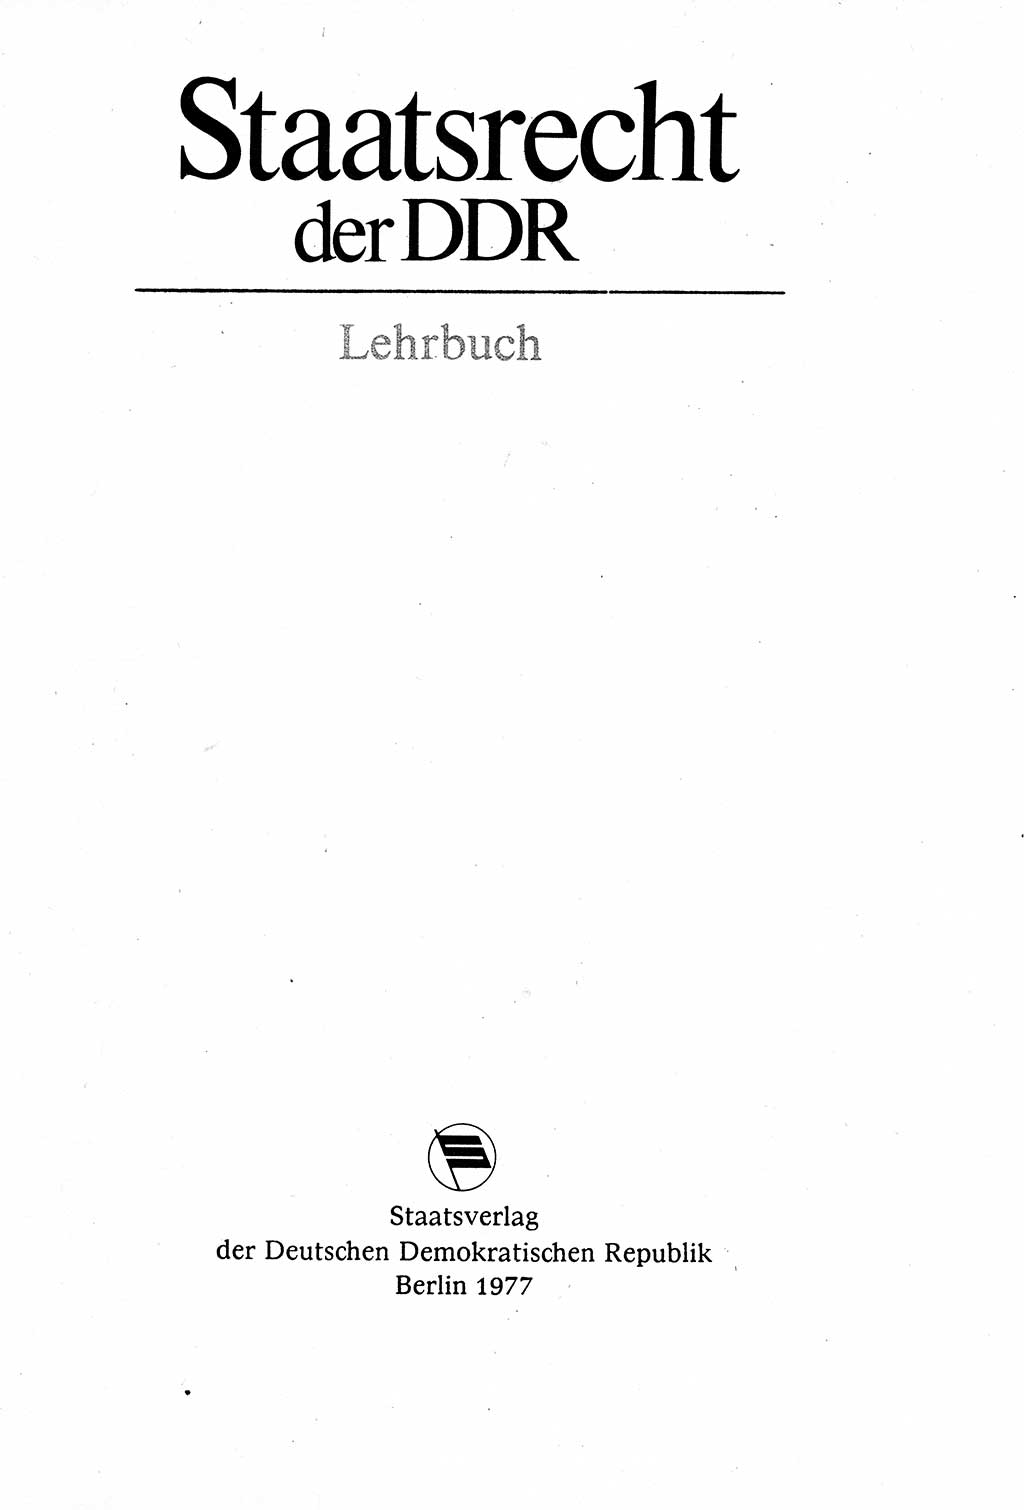 Staatsrecht der DDR (Deutsche Demokratische Republik), Lehrbuch 1977, Seite 3 (St.-R. DDR Lb. 1977, S. 3)